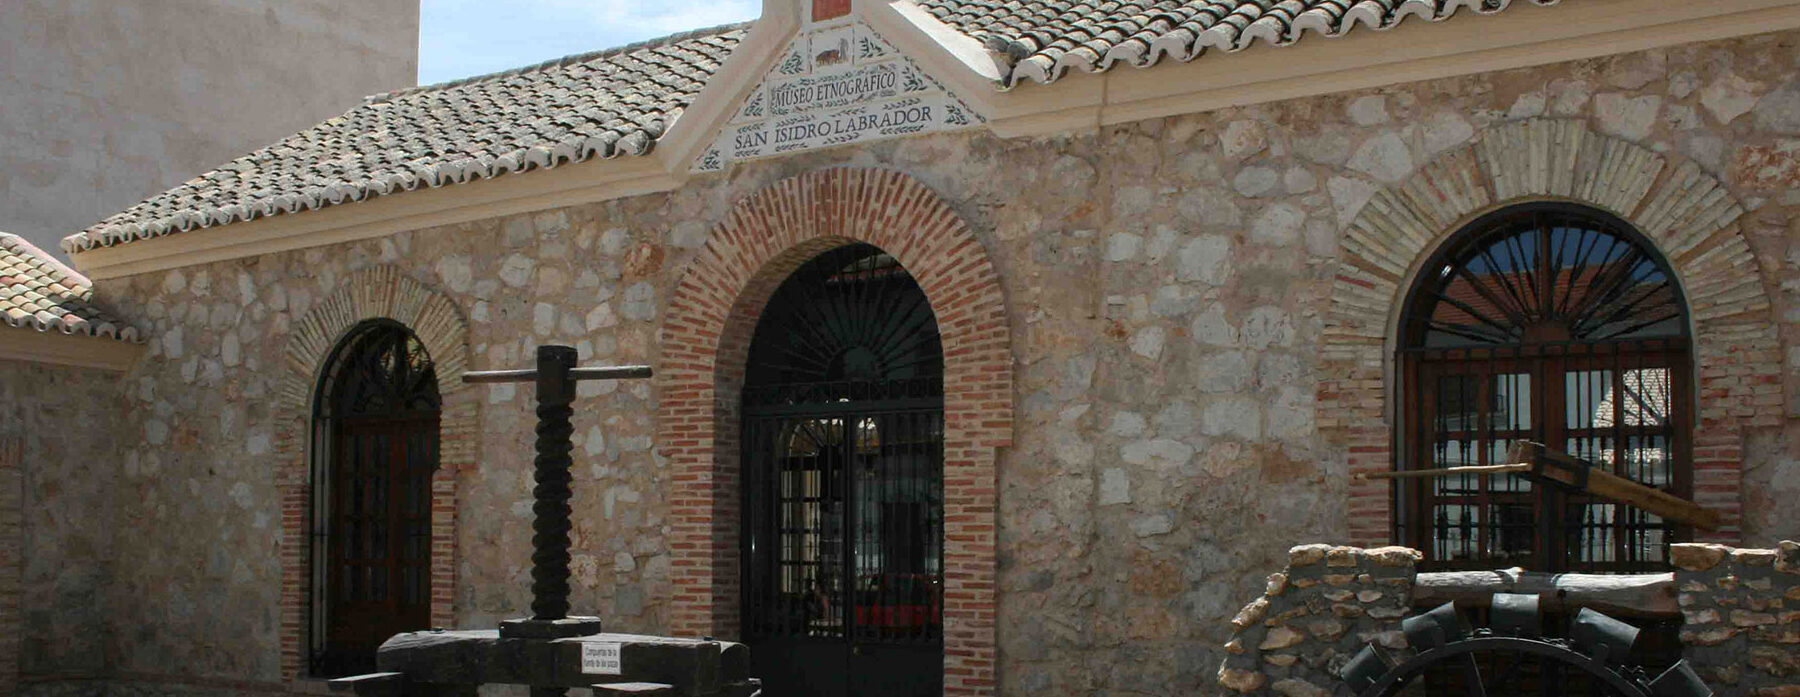 MUSEO ETNOGRÁFICO SAN ISIDRO		Villarrubia de los Ojos	Ciudad Real	Museo